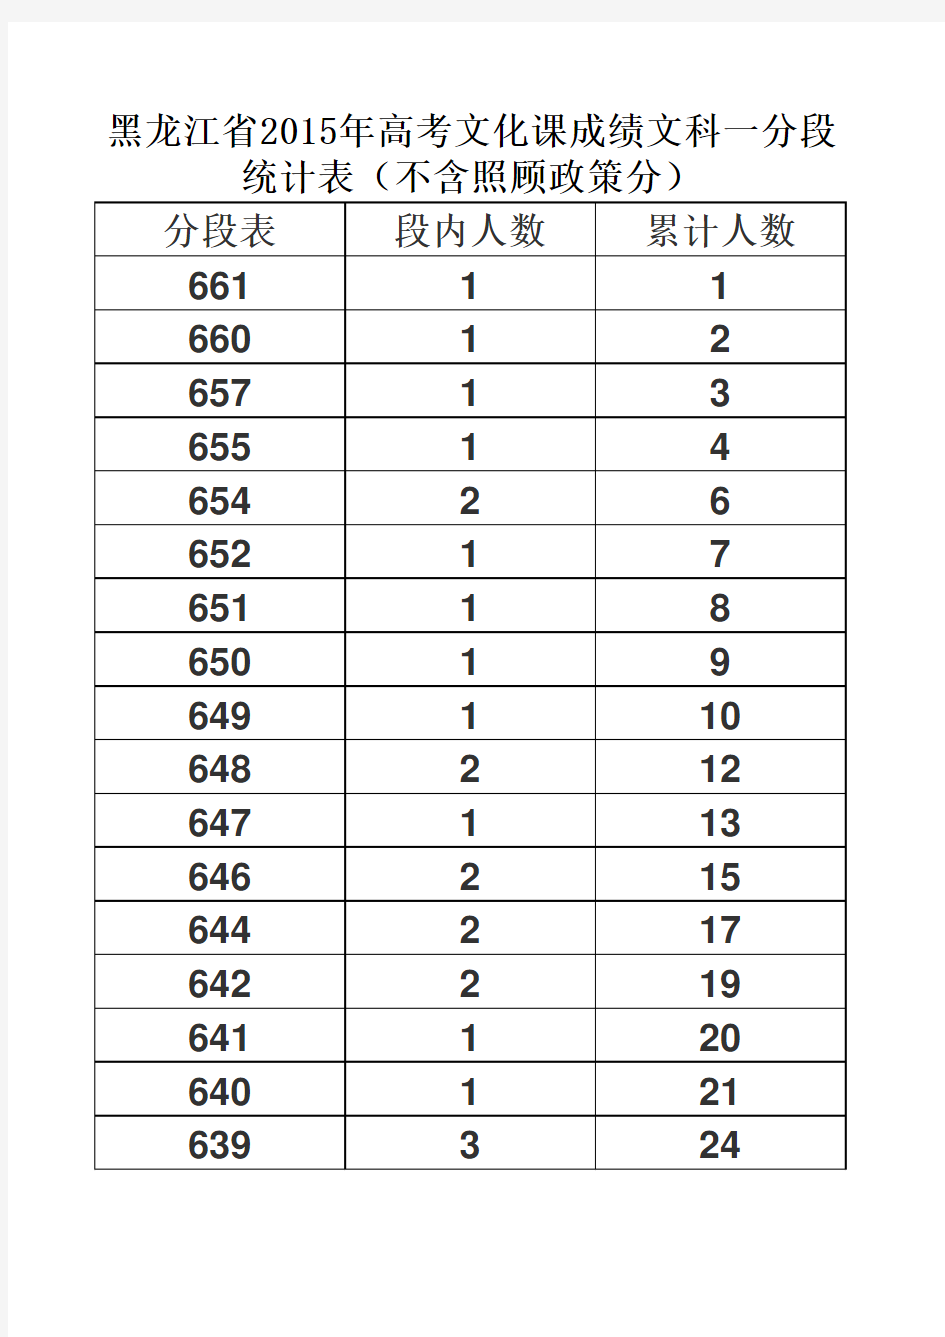 黑龙江省2015年高考文化课成绩文科一分段统计表(不含照顾政策分)